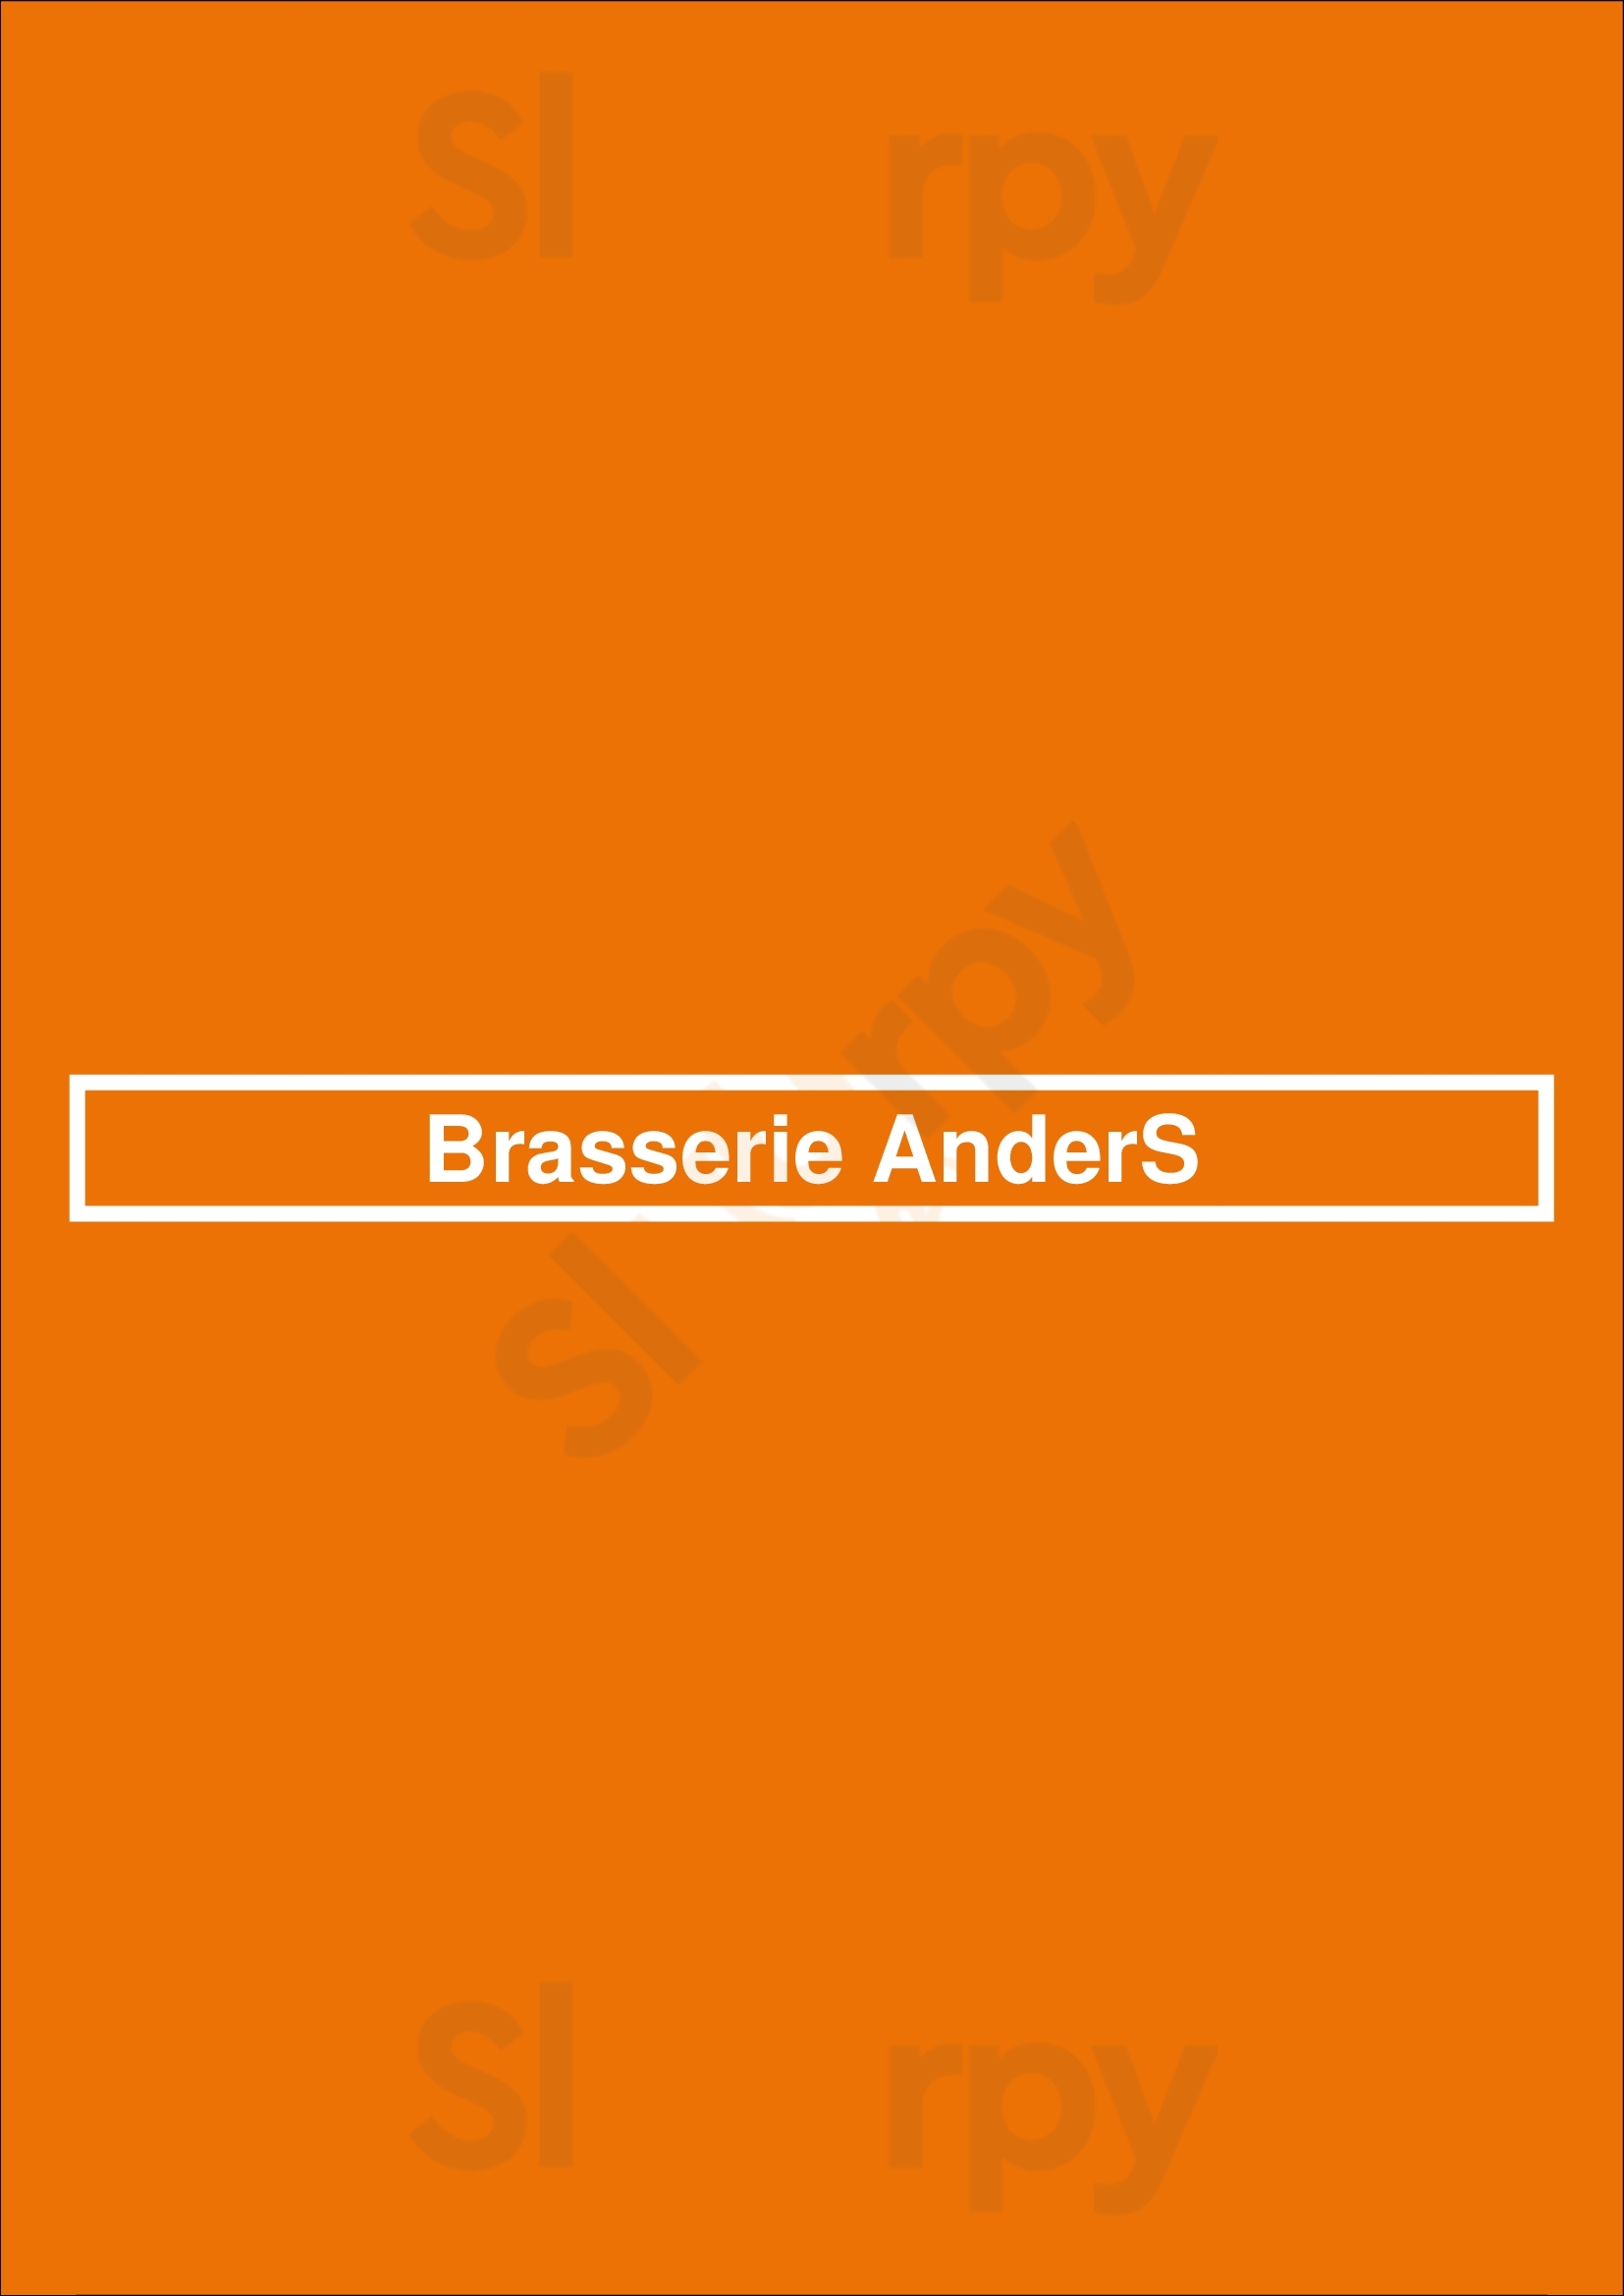 Brasserie Anders Langweer Menu - 1